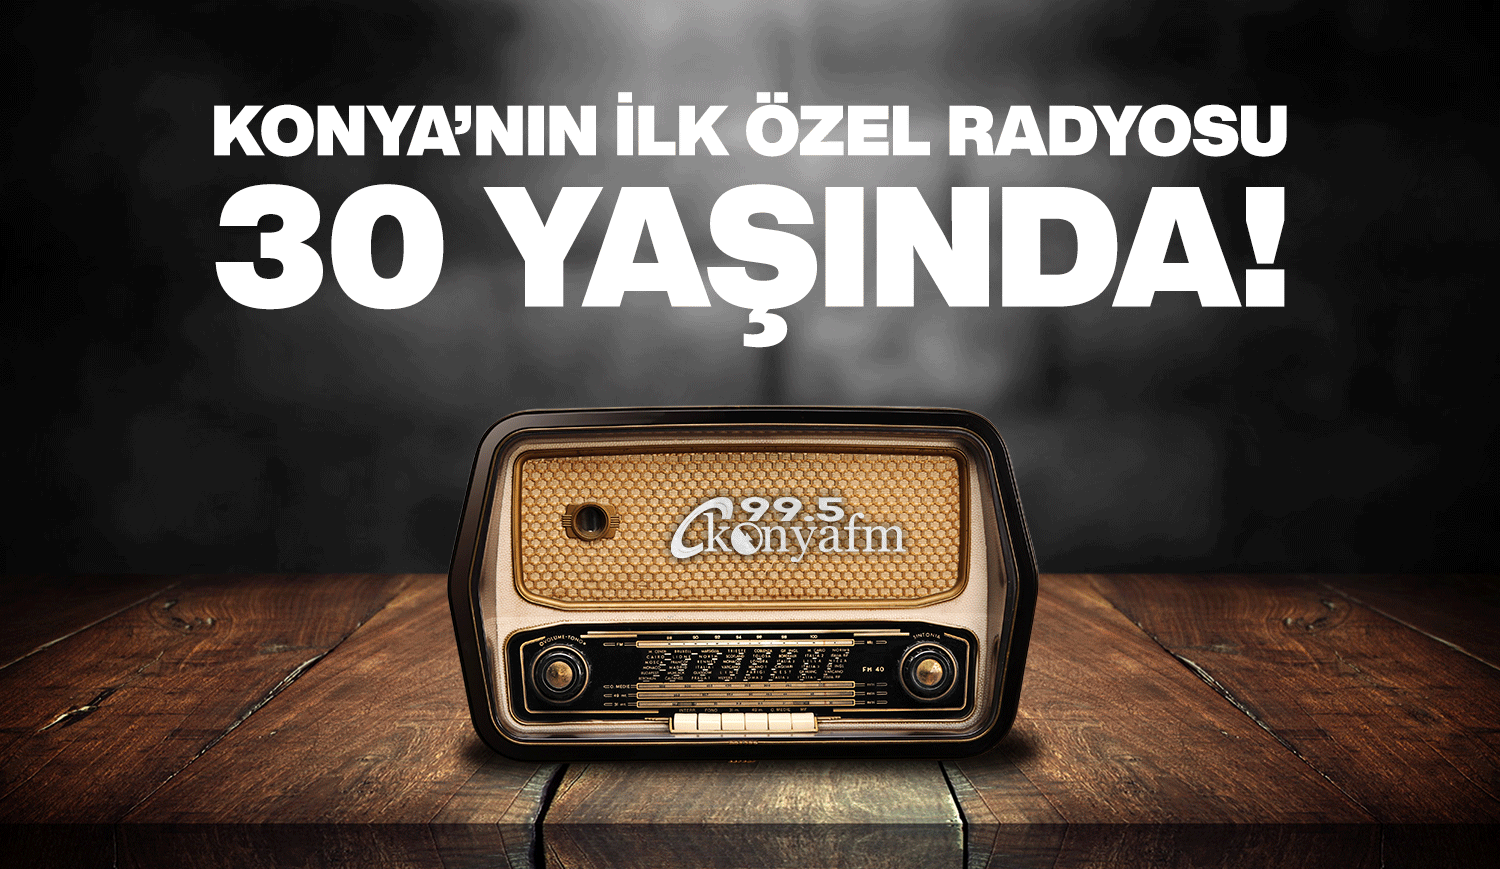 Konya'nın ilk özel radyosu konyafm 30 yaşında    